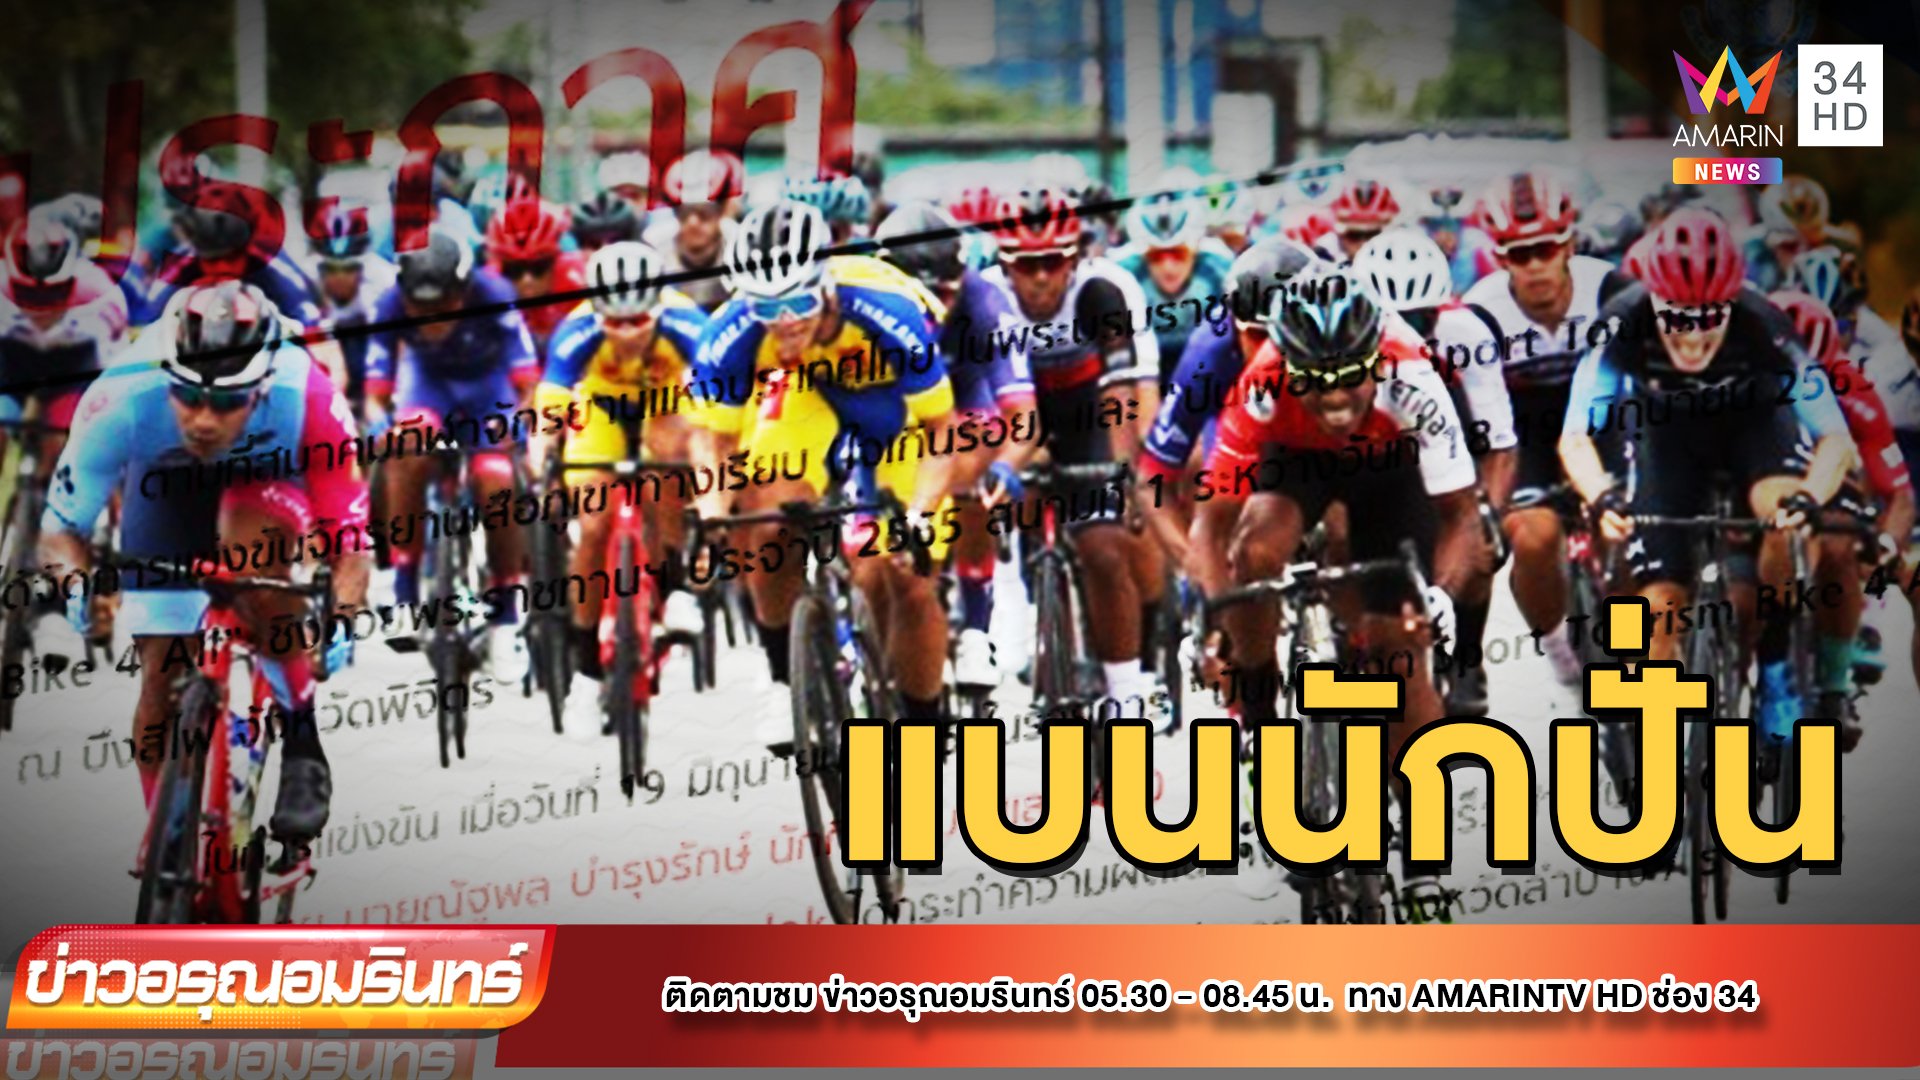 วิจารณ์หนัก! นักปั่นจักรยานผลักคู่แข่ง ถูกแบนแค่ 1 ปี | ข่าวอรุณอมรินทร์ | 21 มิ.ย. 65 | AMARIN TVHD34